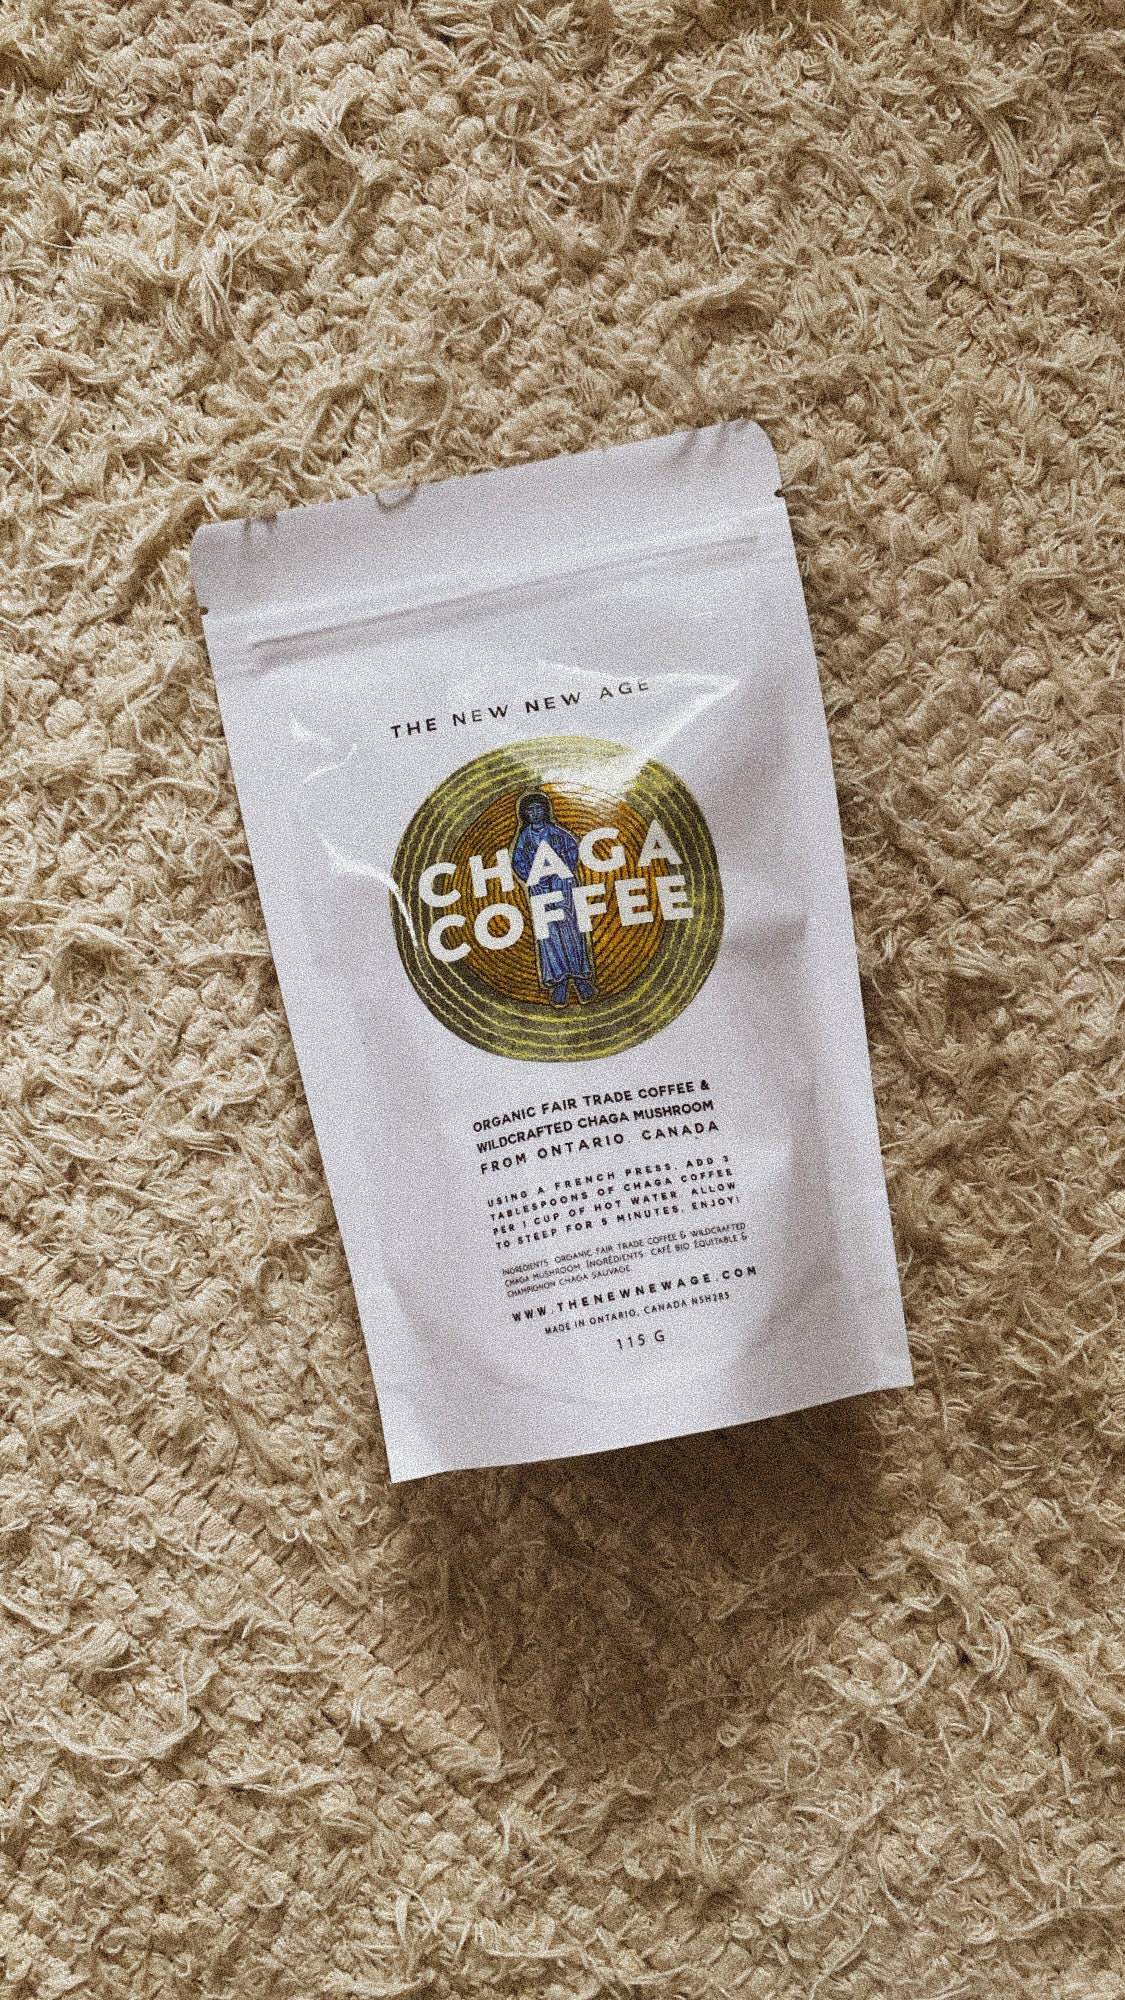 Chaga Coffee